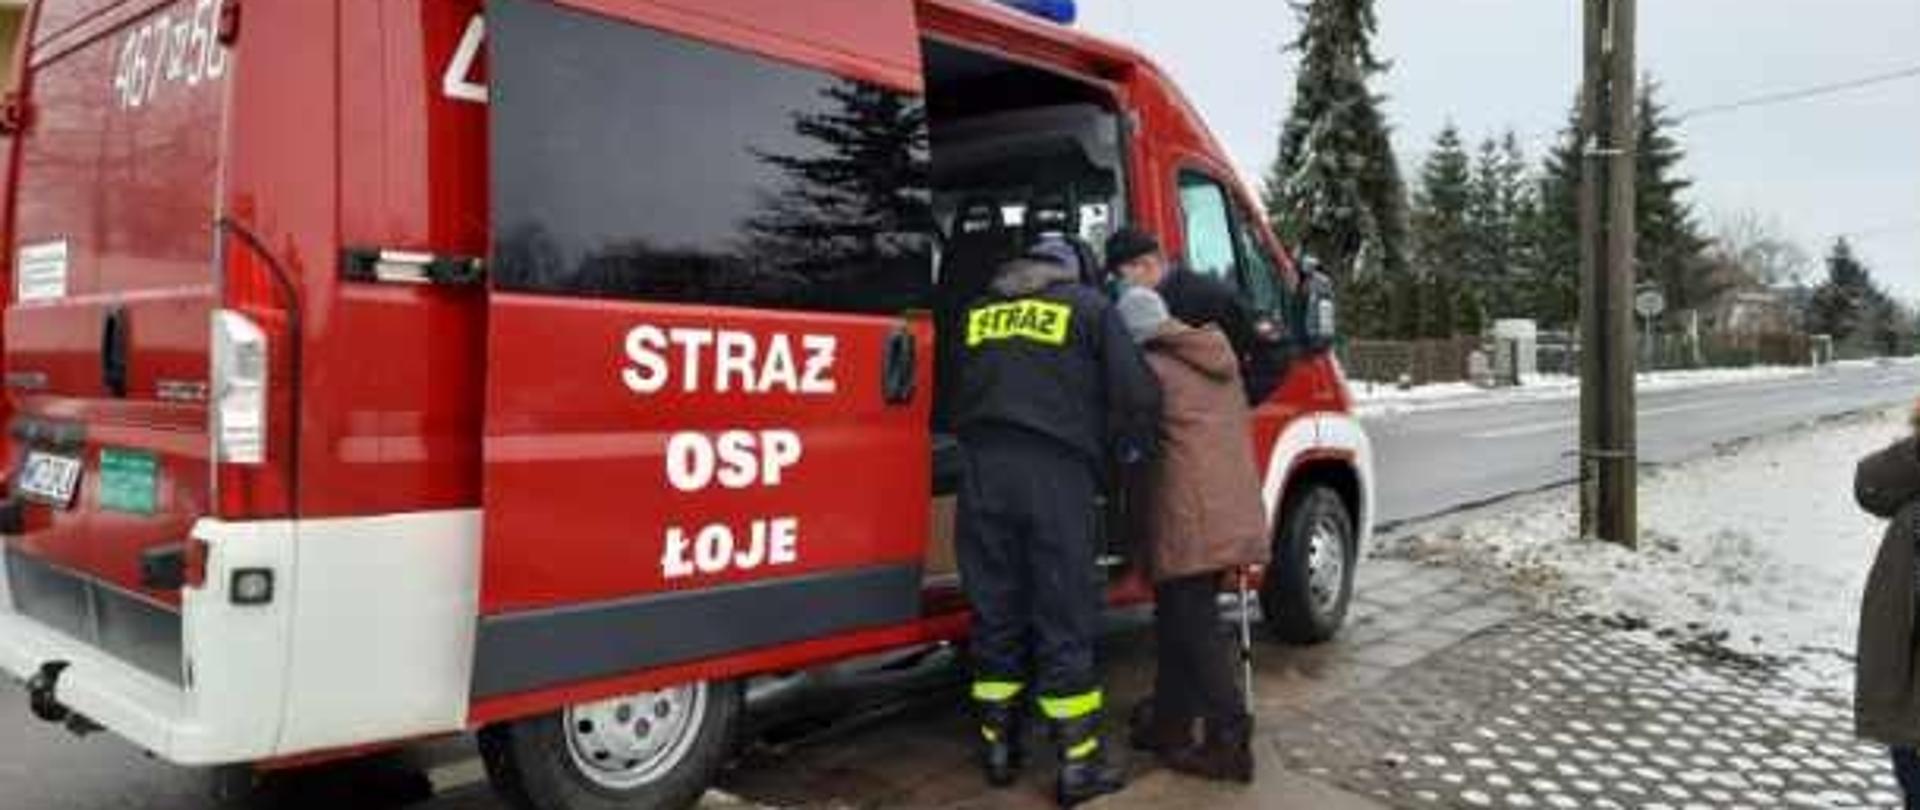 strażacy OSP pomagają seniorowi w transporcie na szczepienie. wejście do samochodu strażackiego